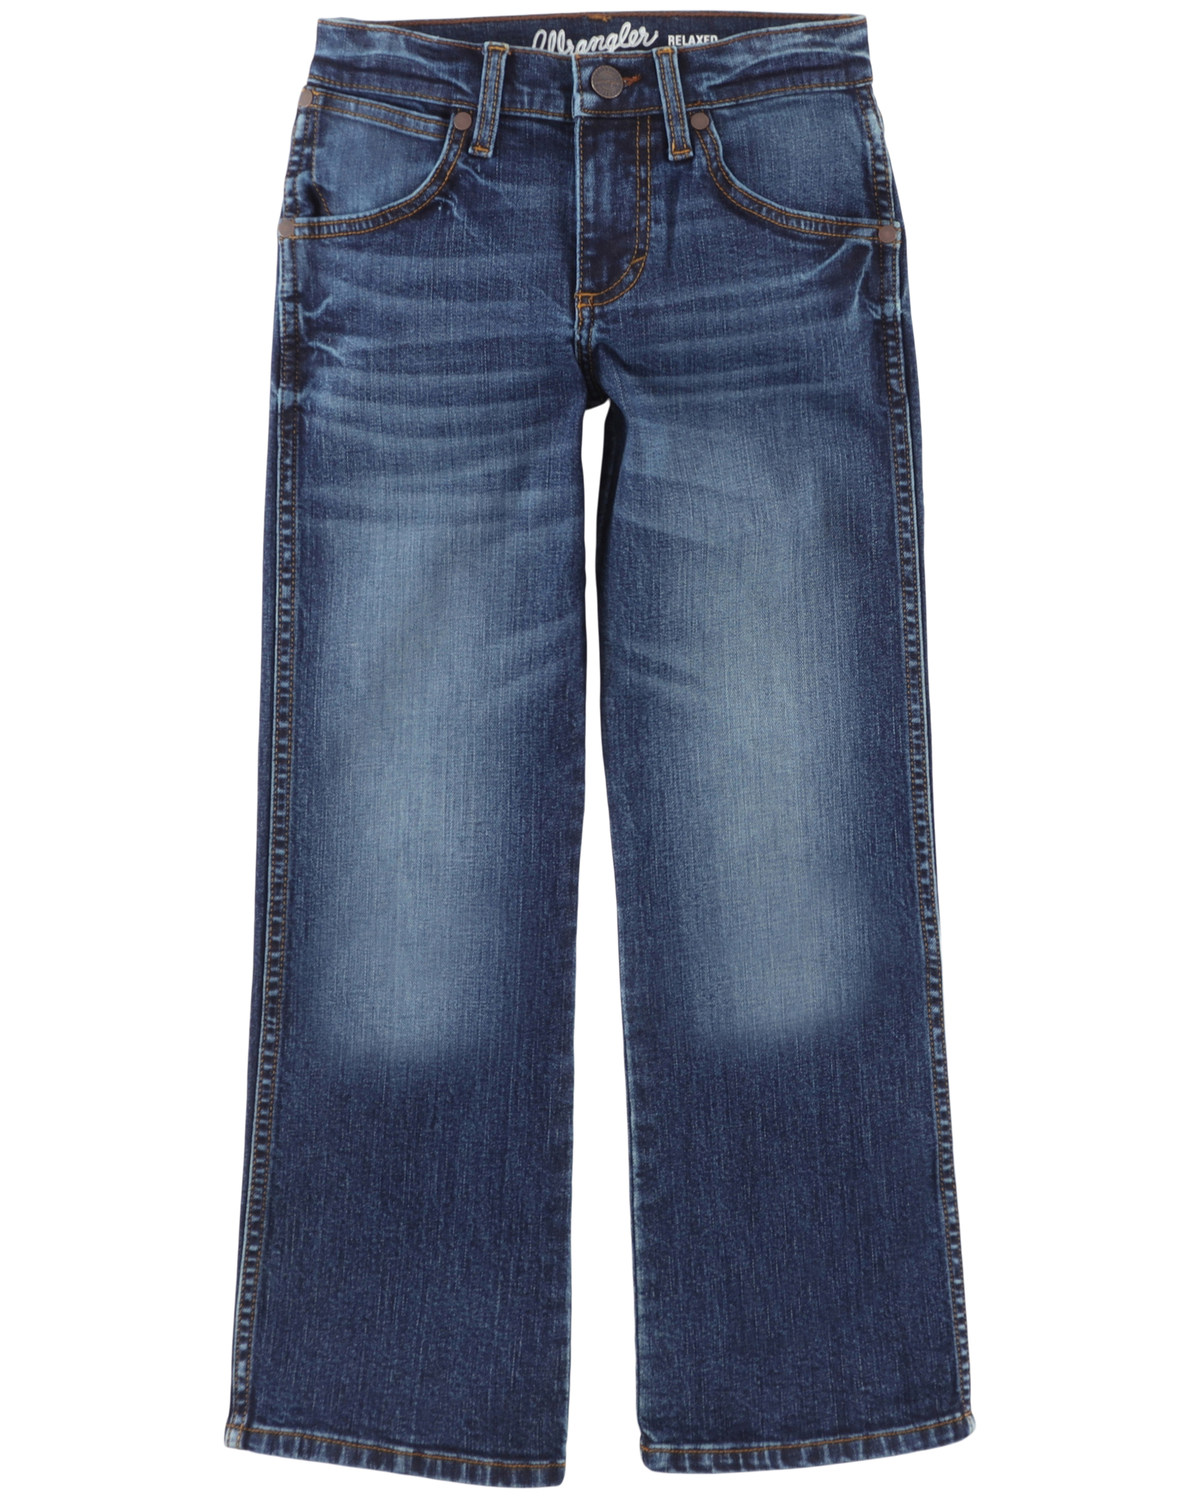 Wrangler Boys' Medium Wash Dellwood Relaxed Bootcut Stretch Jeans - Big